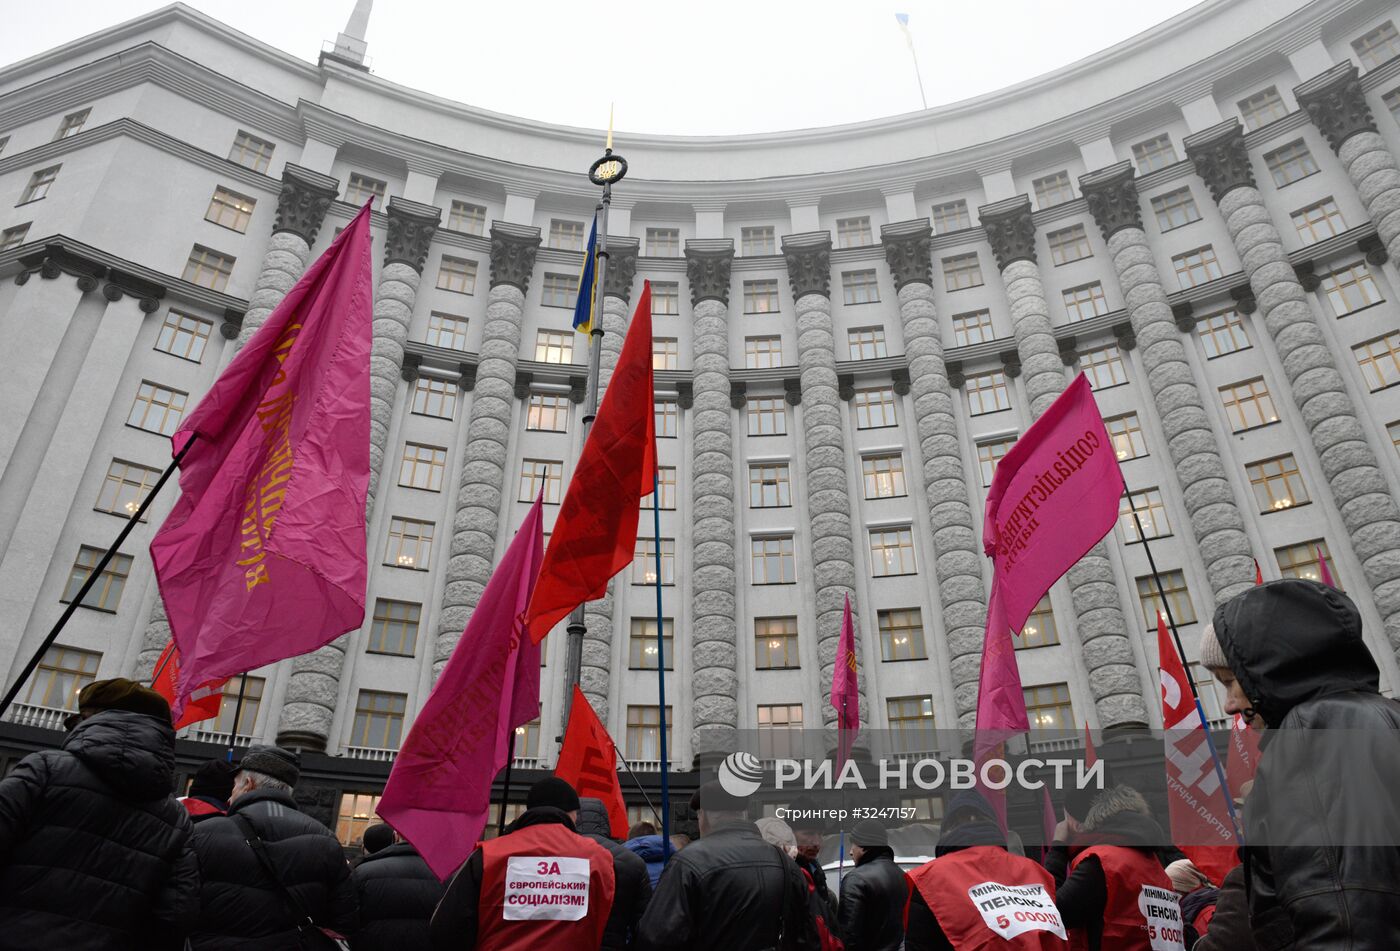 Акция в Киеве с требованием повышения МРОТ и пенсий